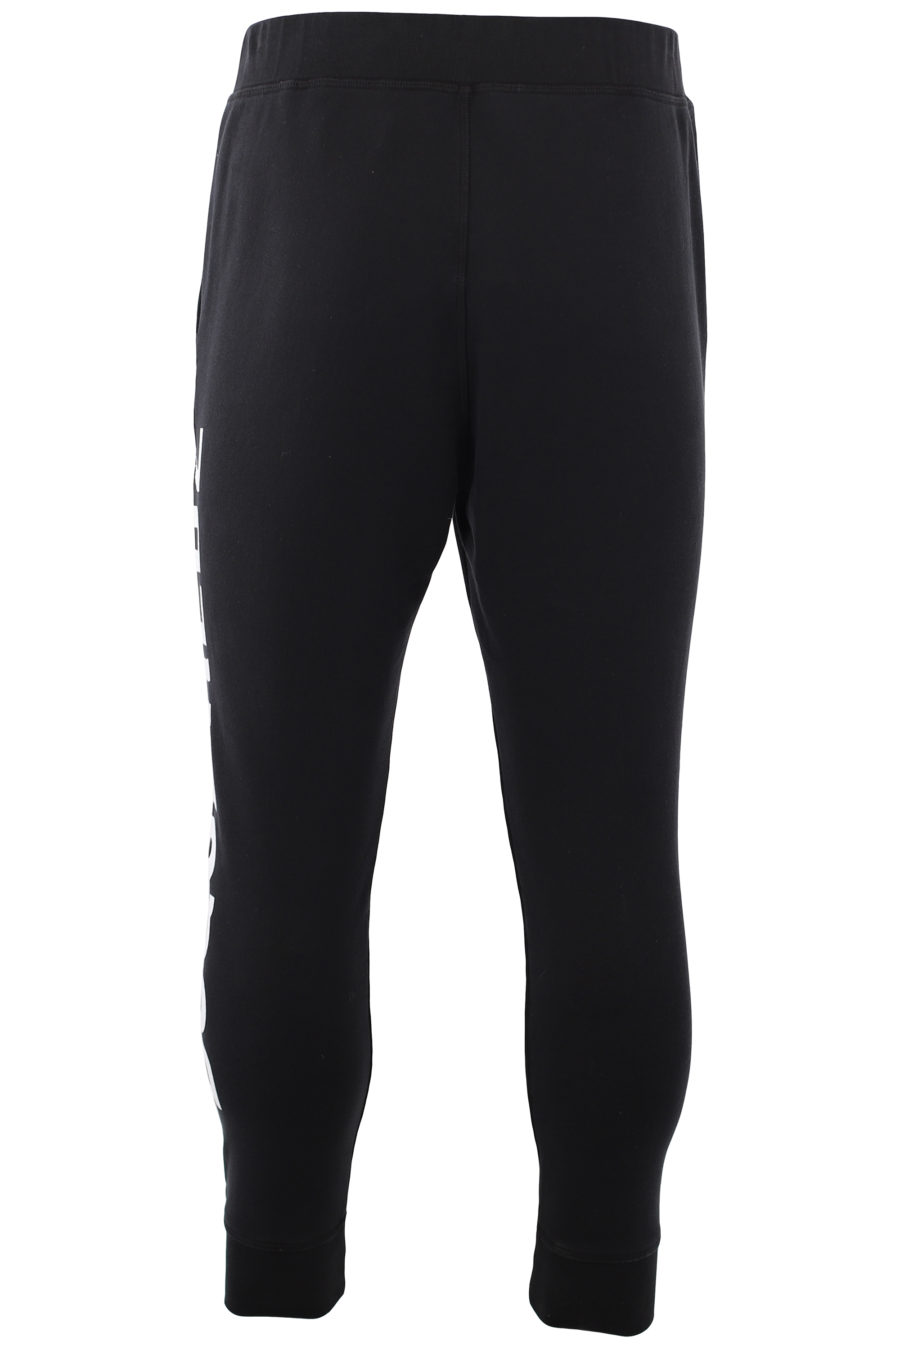 Pantalón de chándal negro logo blanco vertical - IMG 1430